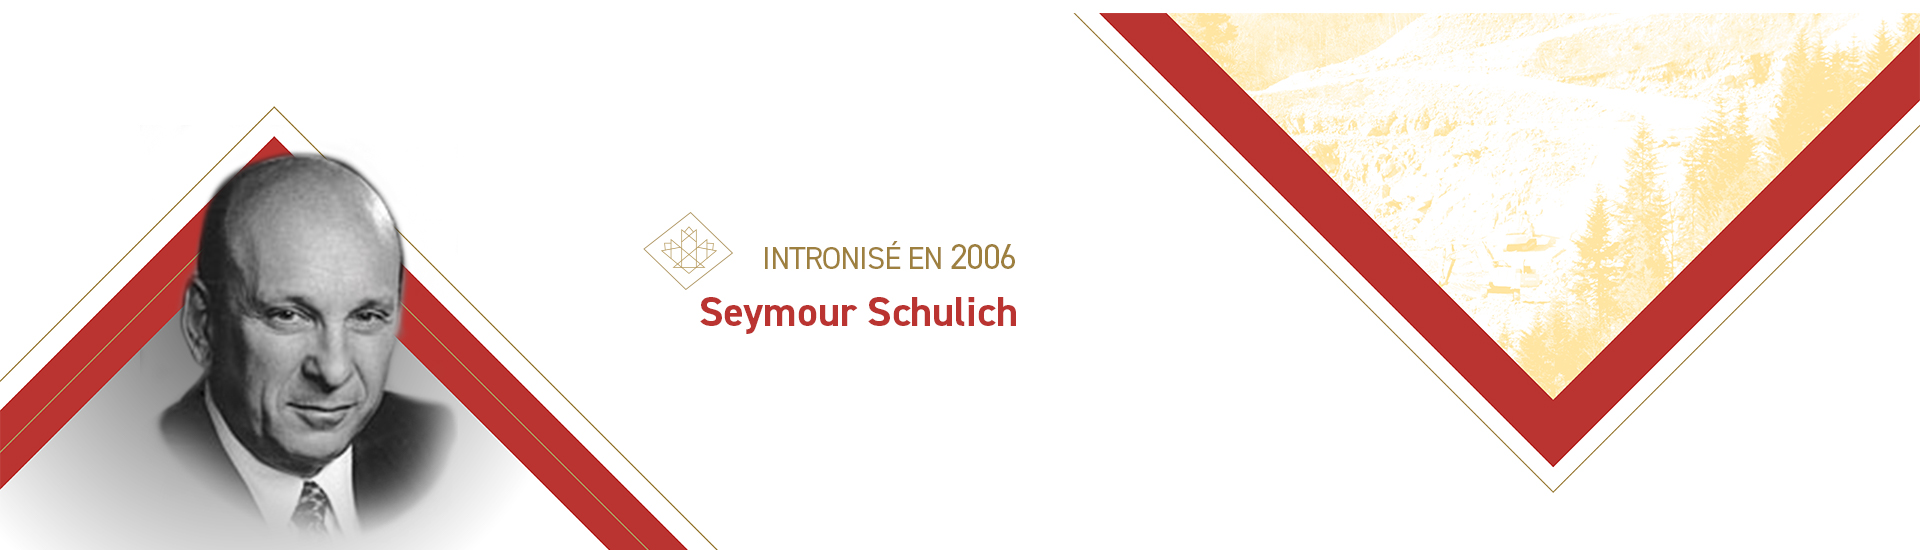 Seymour Schulich (né en 1940)